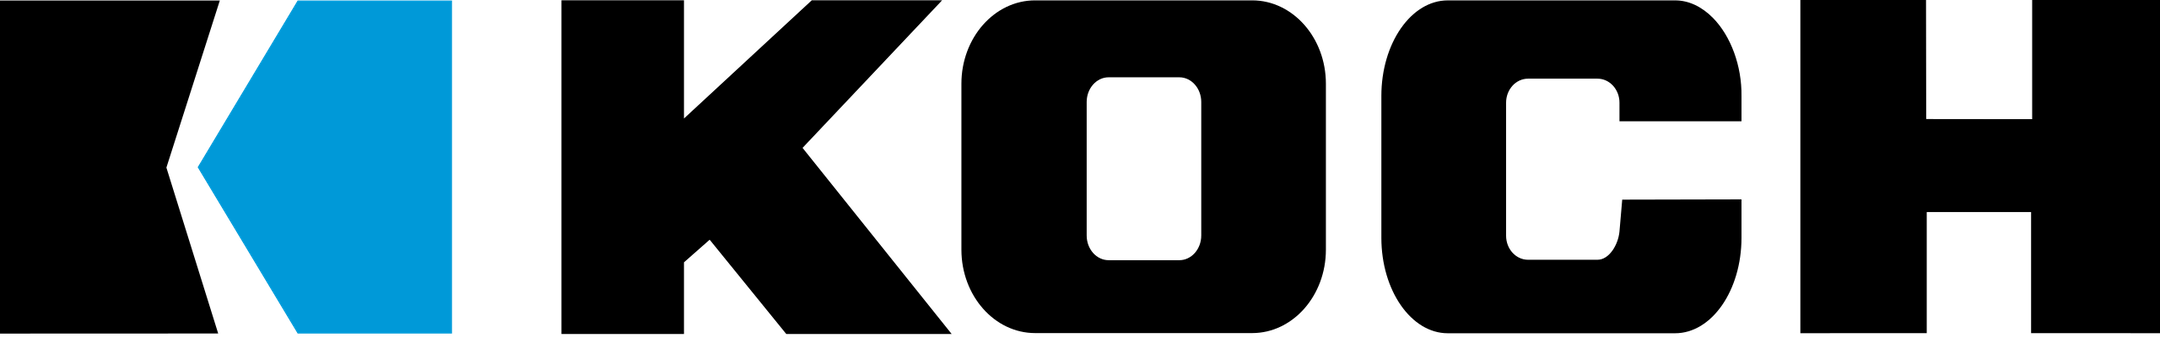 Koch_Industries_logo.svg